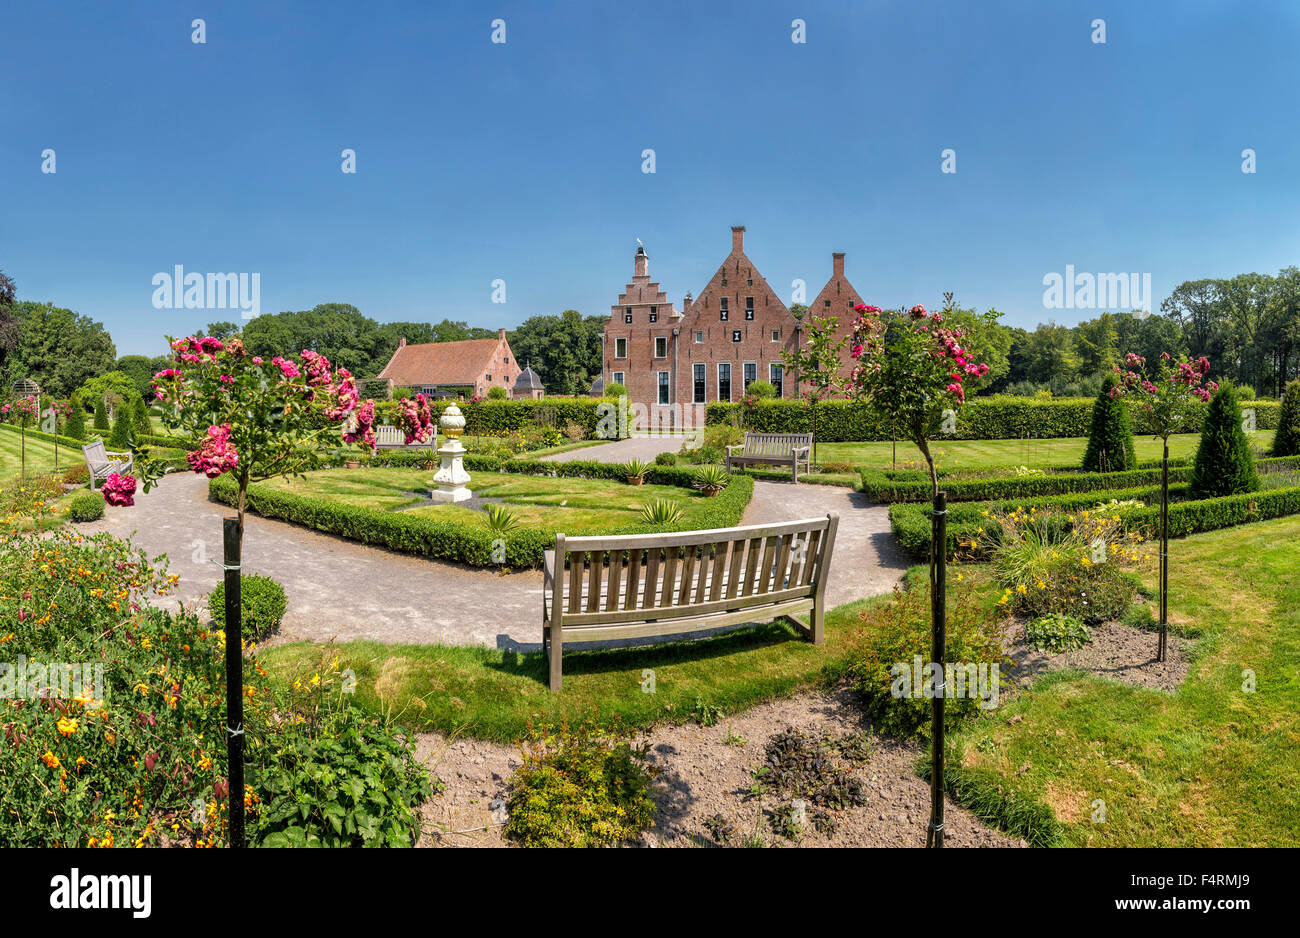 Pays-bas, Europe, Hollande, Uithuizen, Groningen, château, fleurs, été, Jardin, château Menkemaborg Banque D'Images